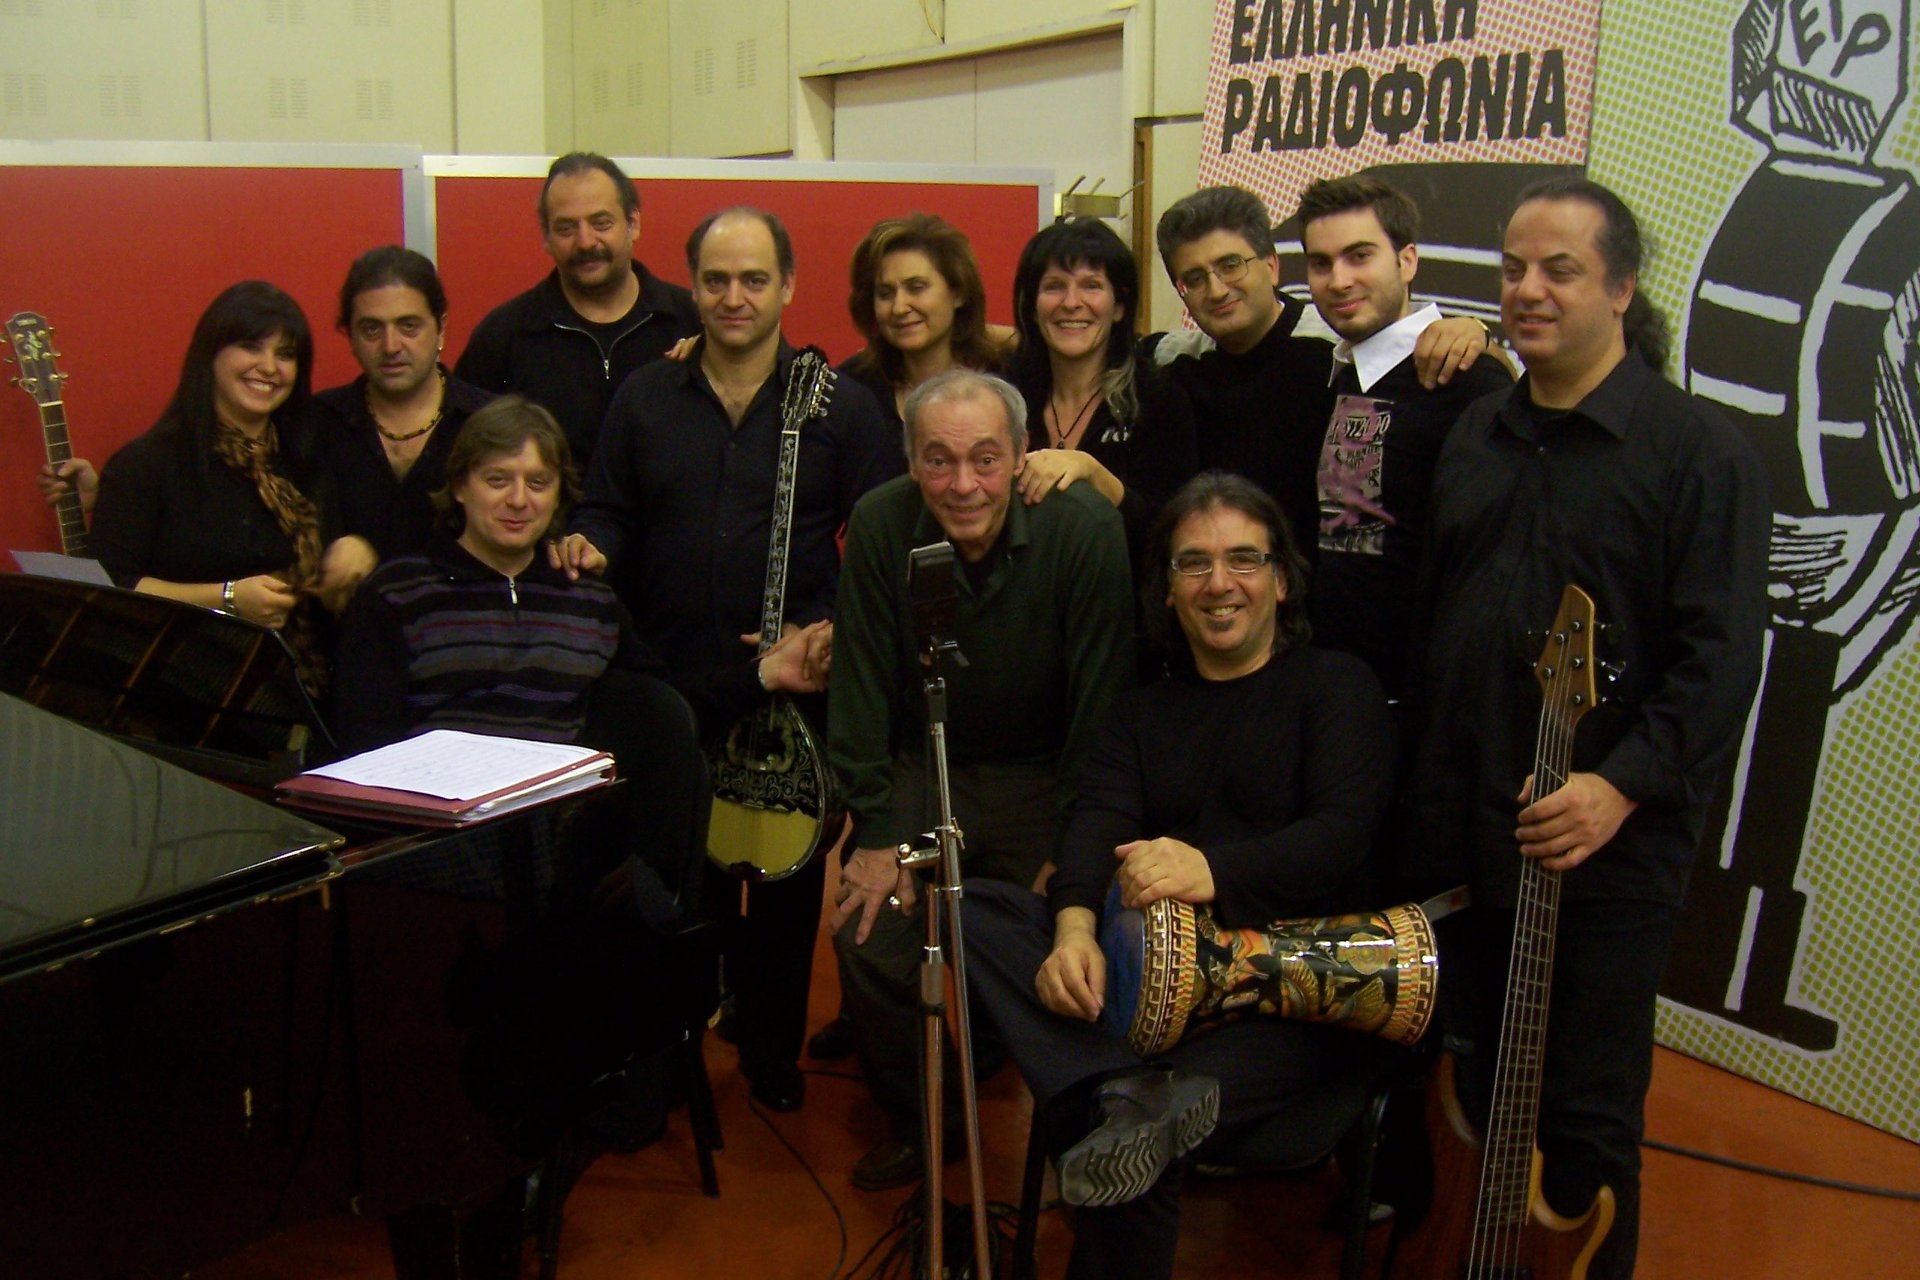 «Ησυχία Γράφουμε»(από το αρχείο της εκπομπής)Σάββατο 15 Φεβρουαρίου 2020- Ο Μανώλης Καραντίνης παίζει και τραγουδά Τόλη Βοσκόπουλο. Τραγουδούν επίσης ο Νίκος Δημητράτος, η Σοφία Βόσσου, ο Θάνος Ολύμπιος και η Τζίνα Αργυρίου